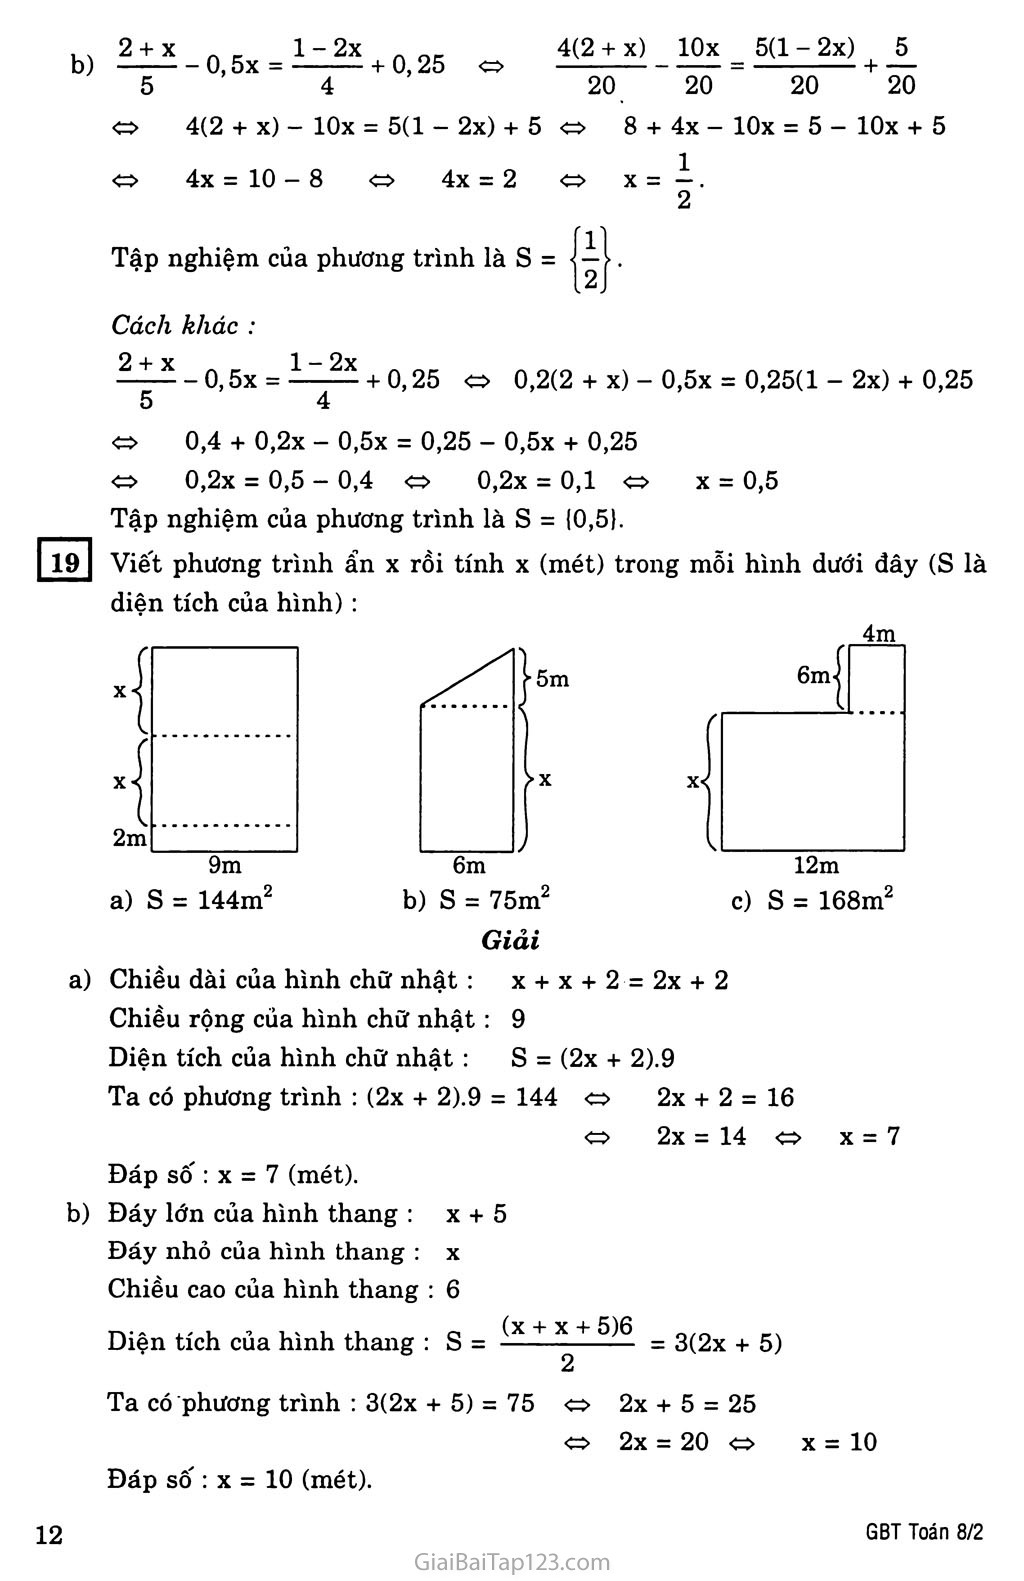 §3. Phương trình đưa được về dạng ax + b = 0 trang 6